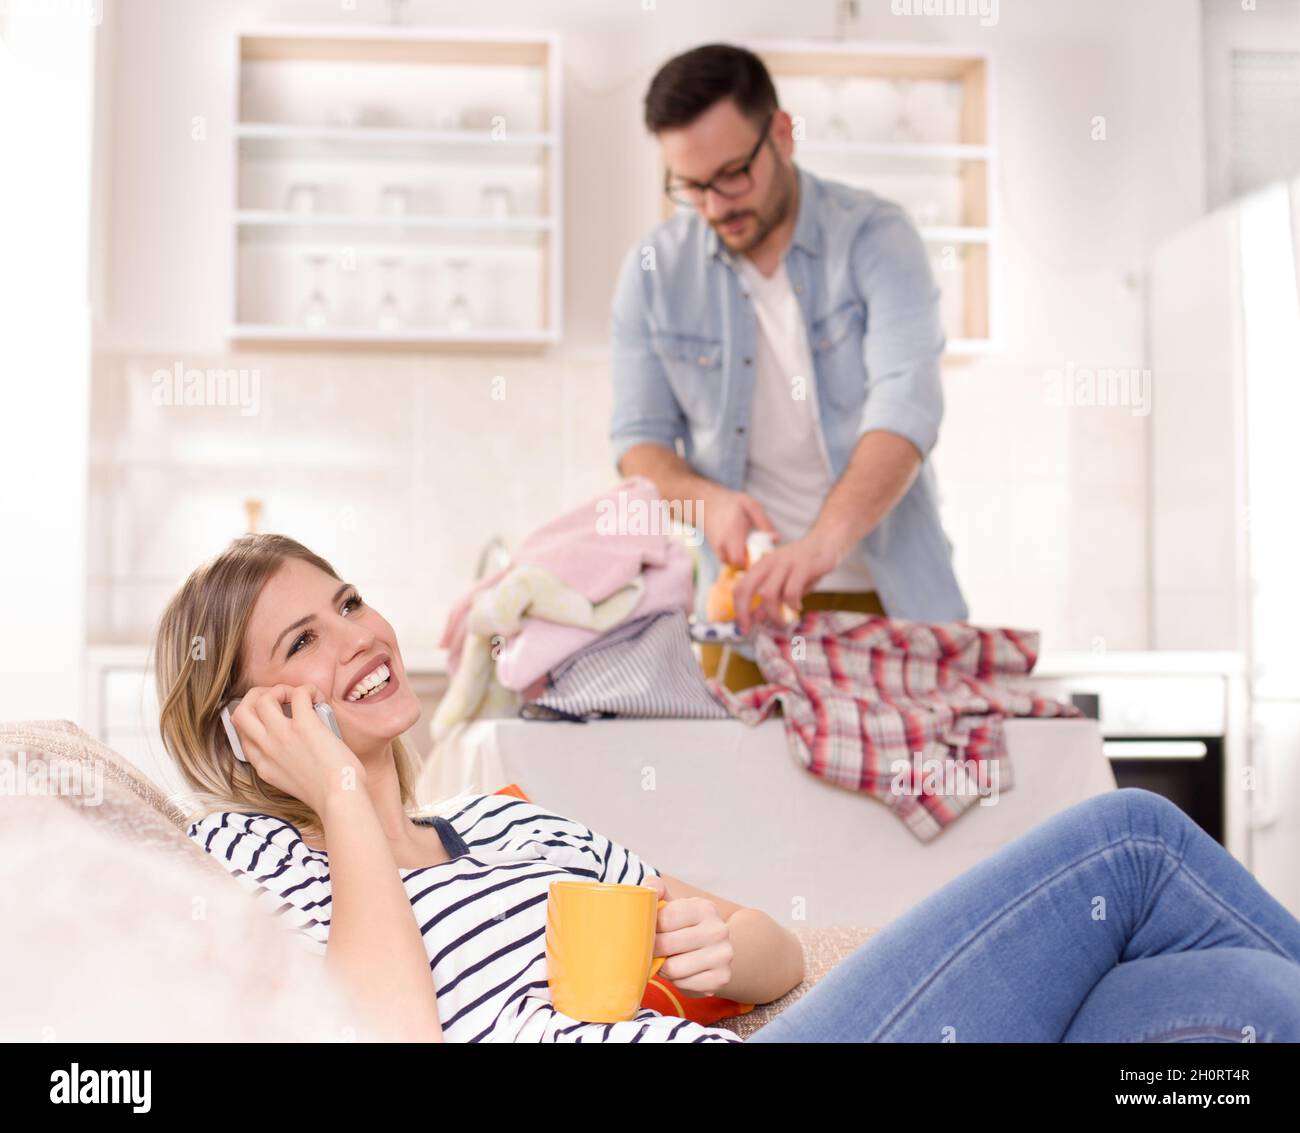 Schöne junge Frau, die sich auf dem Sofa ausruhte und auf dem Handy sprach, während der Mann ihr Hemd im Hintergrund bügelt. Ehemann macht Aufgaben Konzept Stockfoto